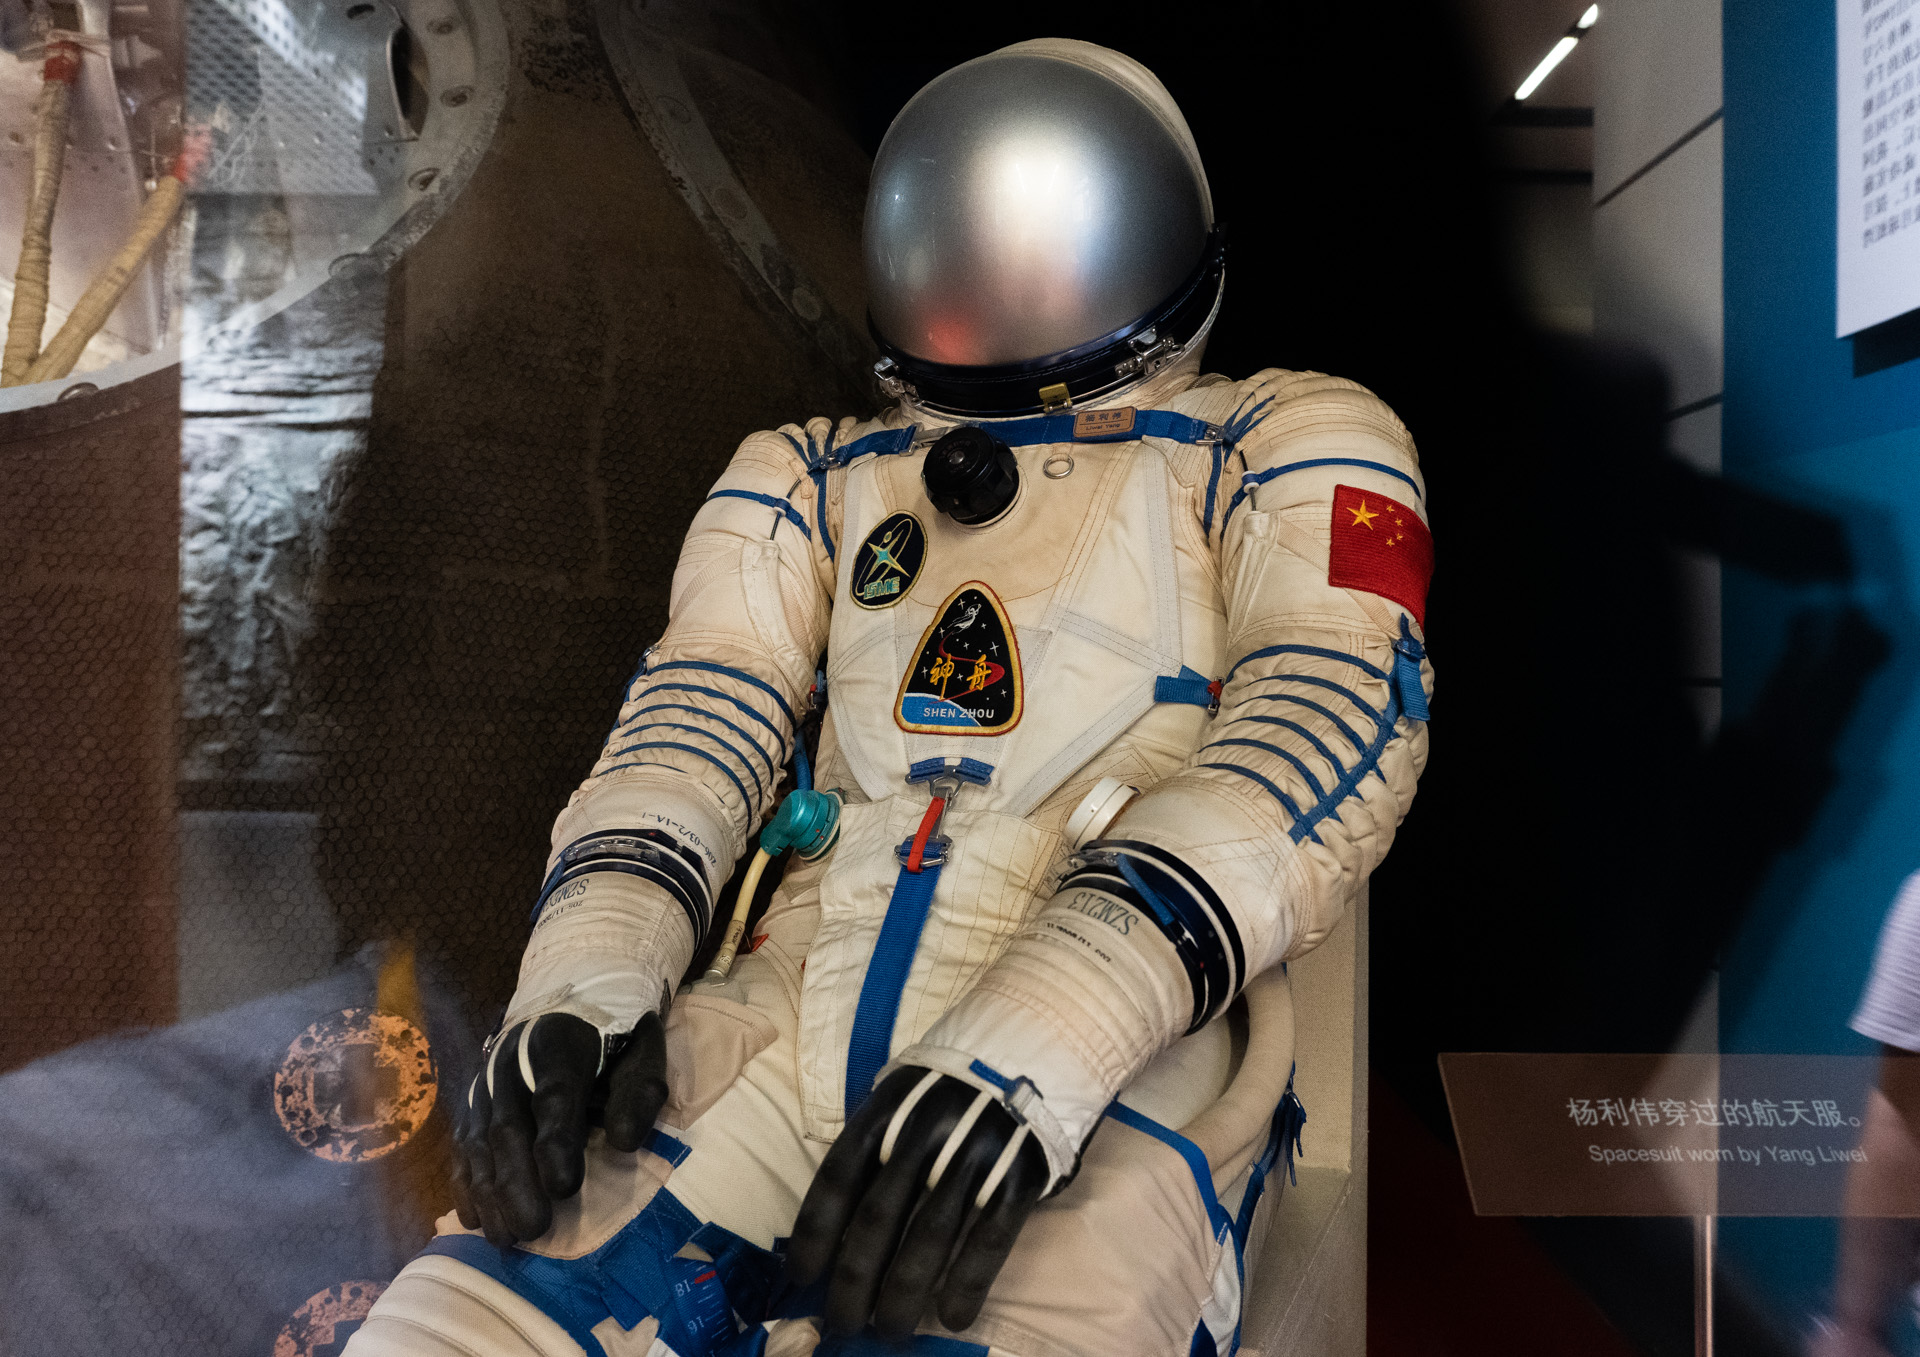 国家博物馆杨利伟穿过的宇航服